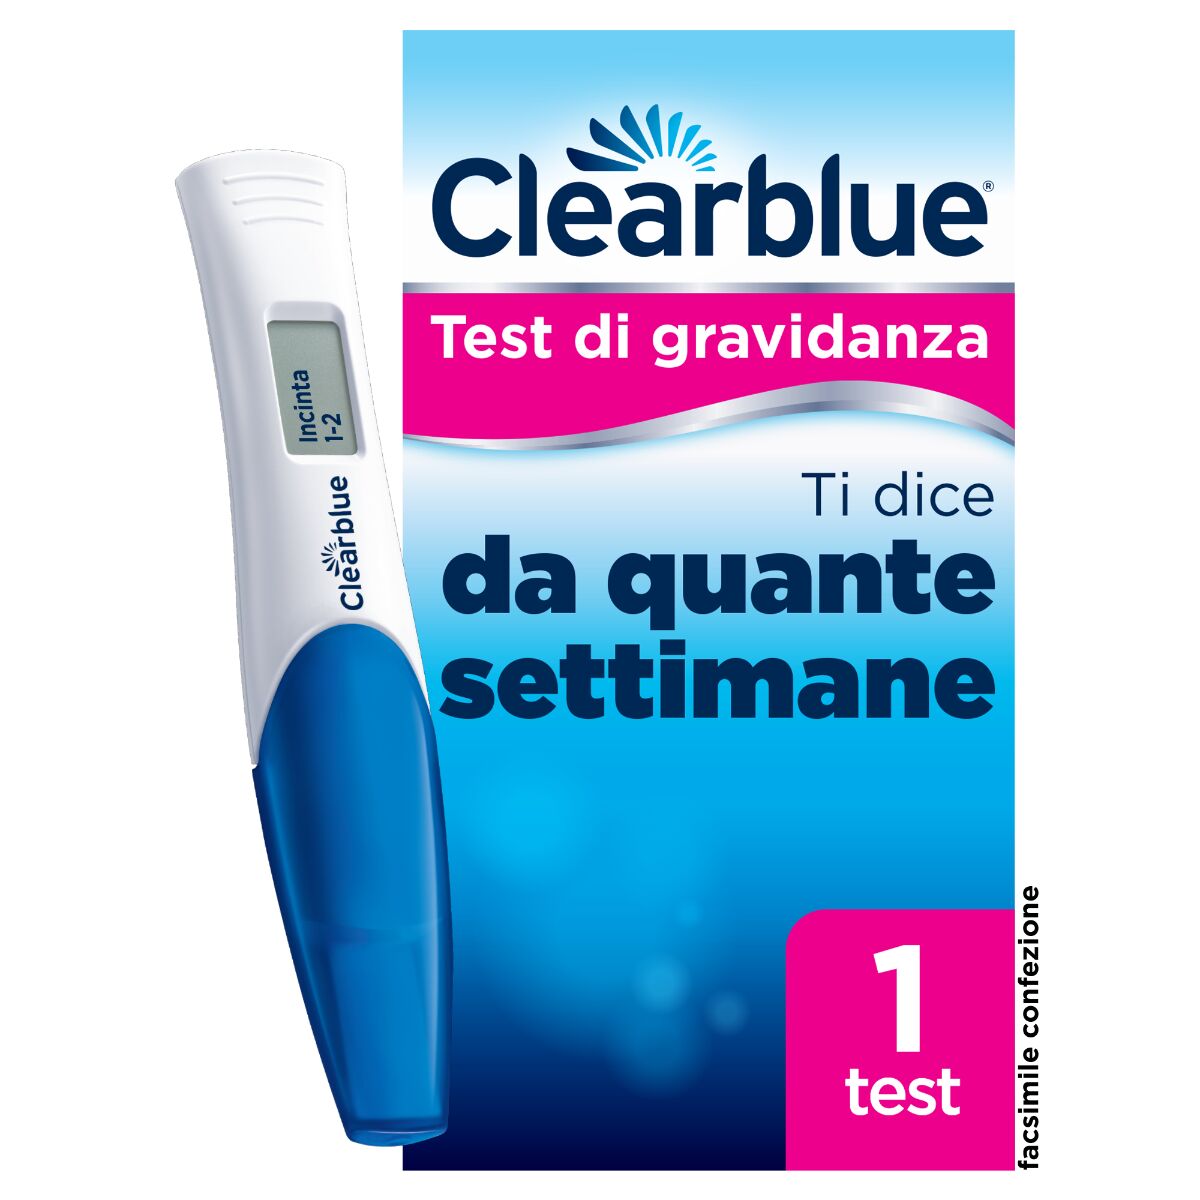 ClearBlue Test di Gravidanza Con Indicatore Delle Settimane Ti Dice Da Quanto è Avvenuto Il Concepimento 1 Test Digitale